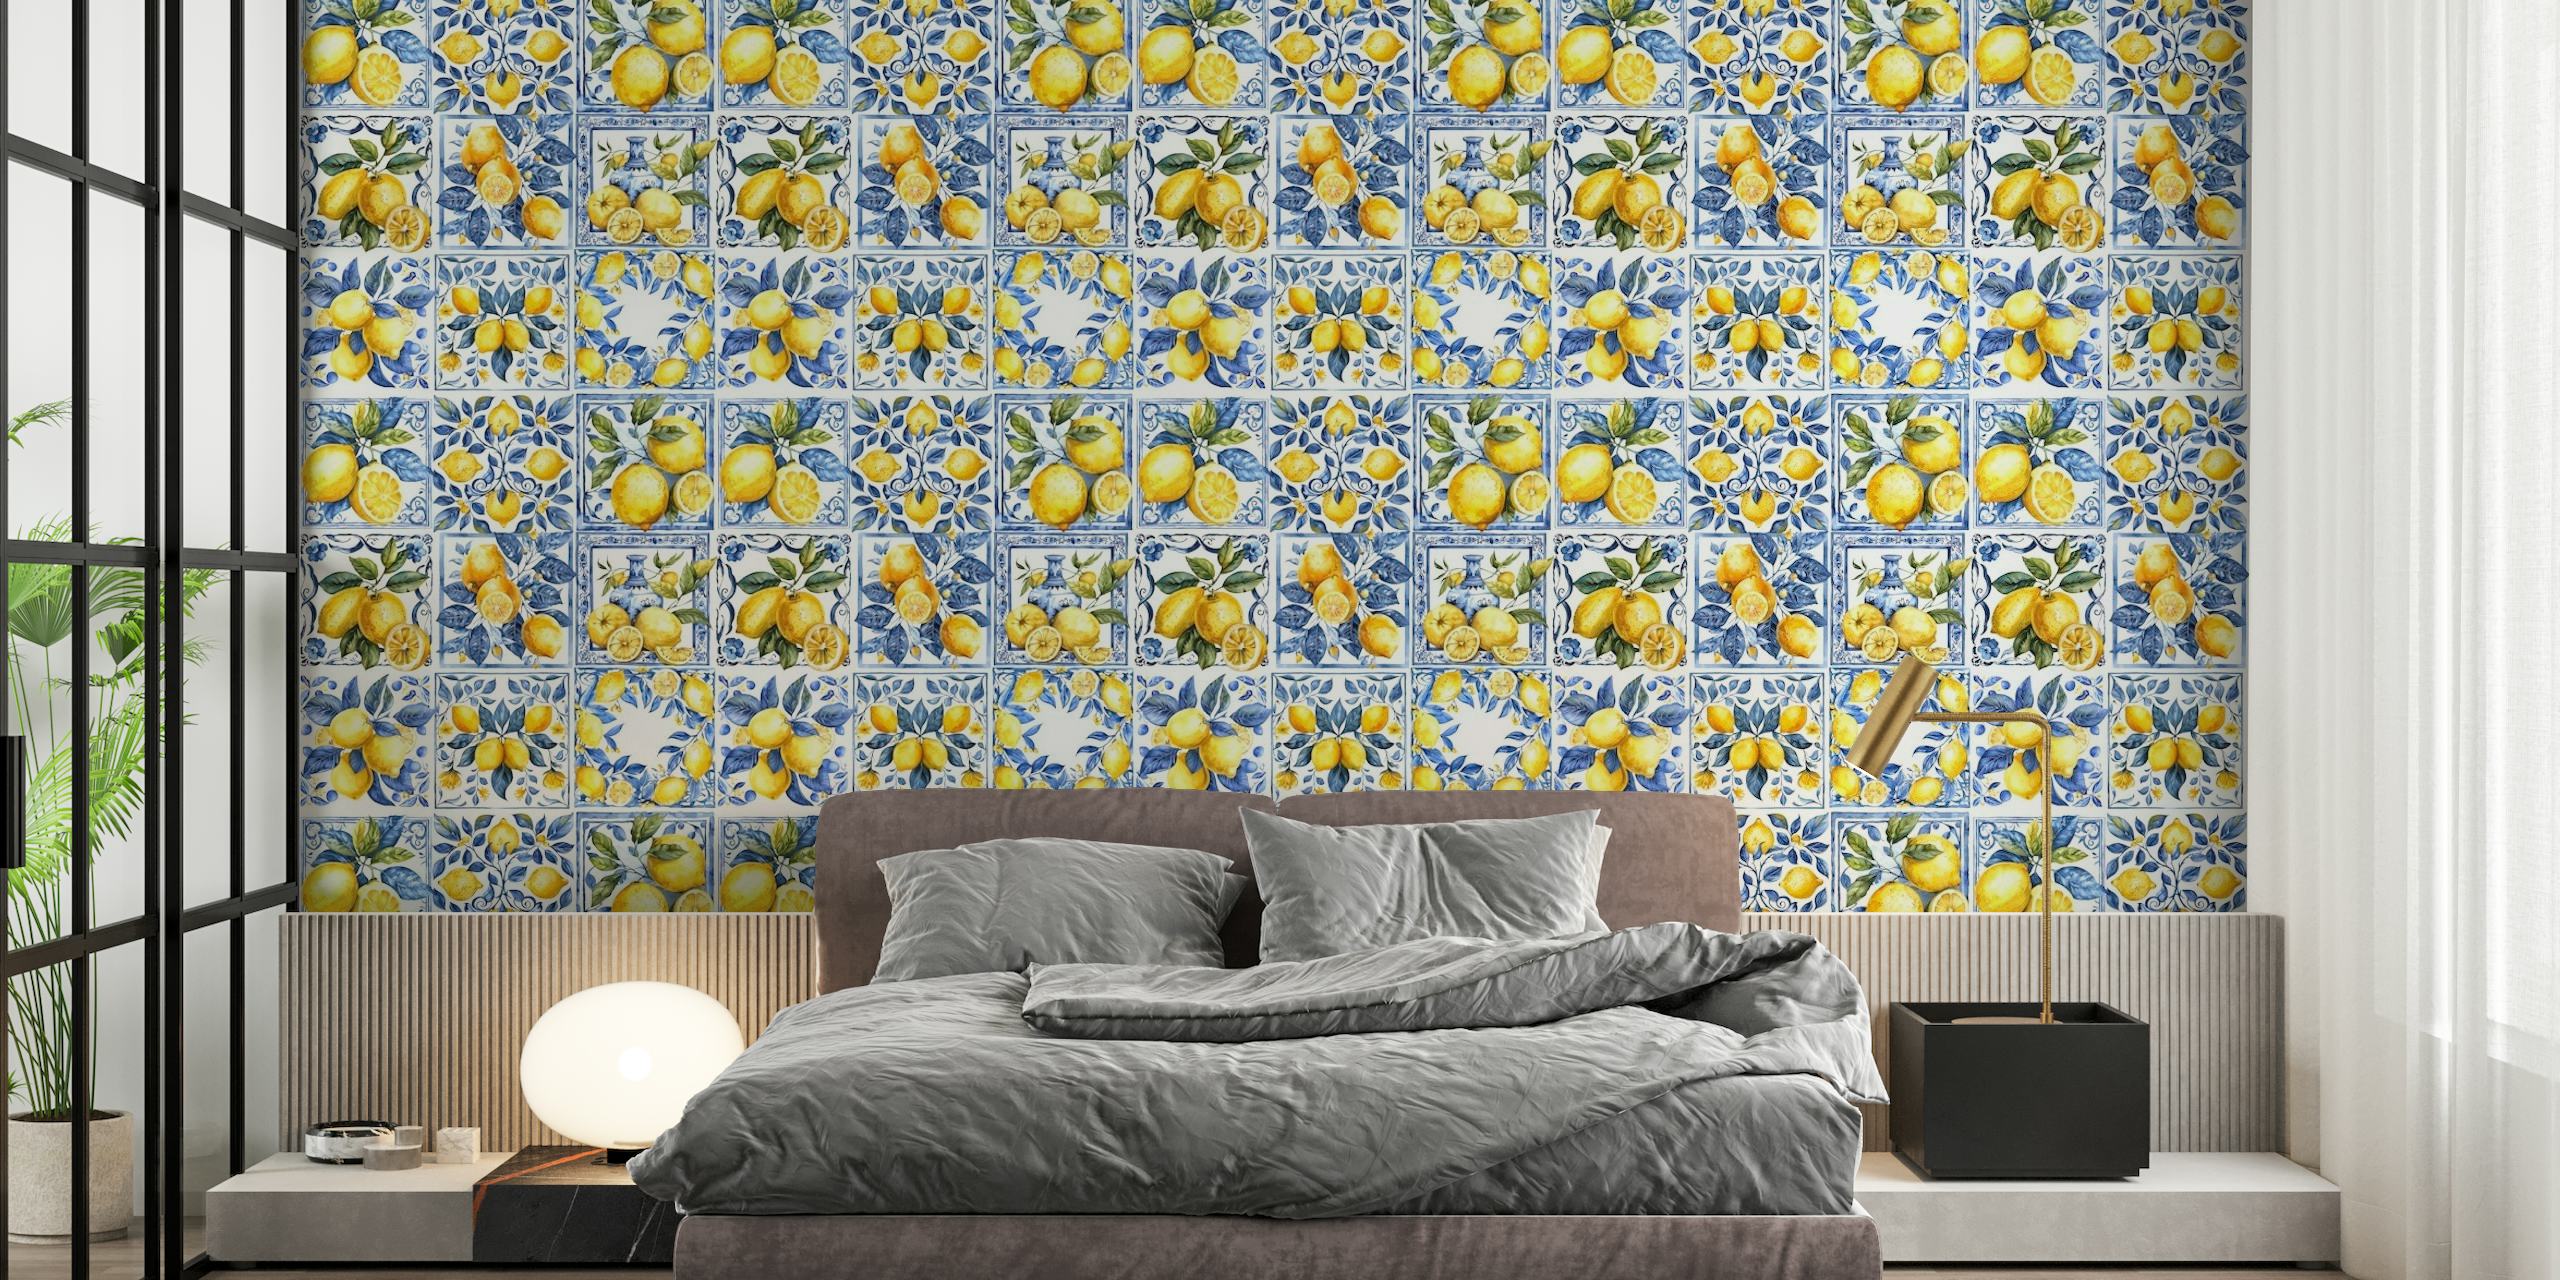 Mediterranean tiles with lemons mural carta da parati